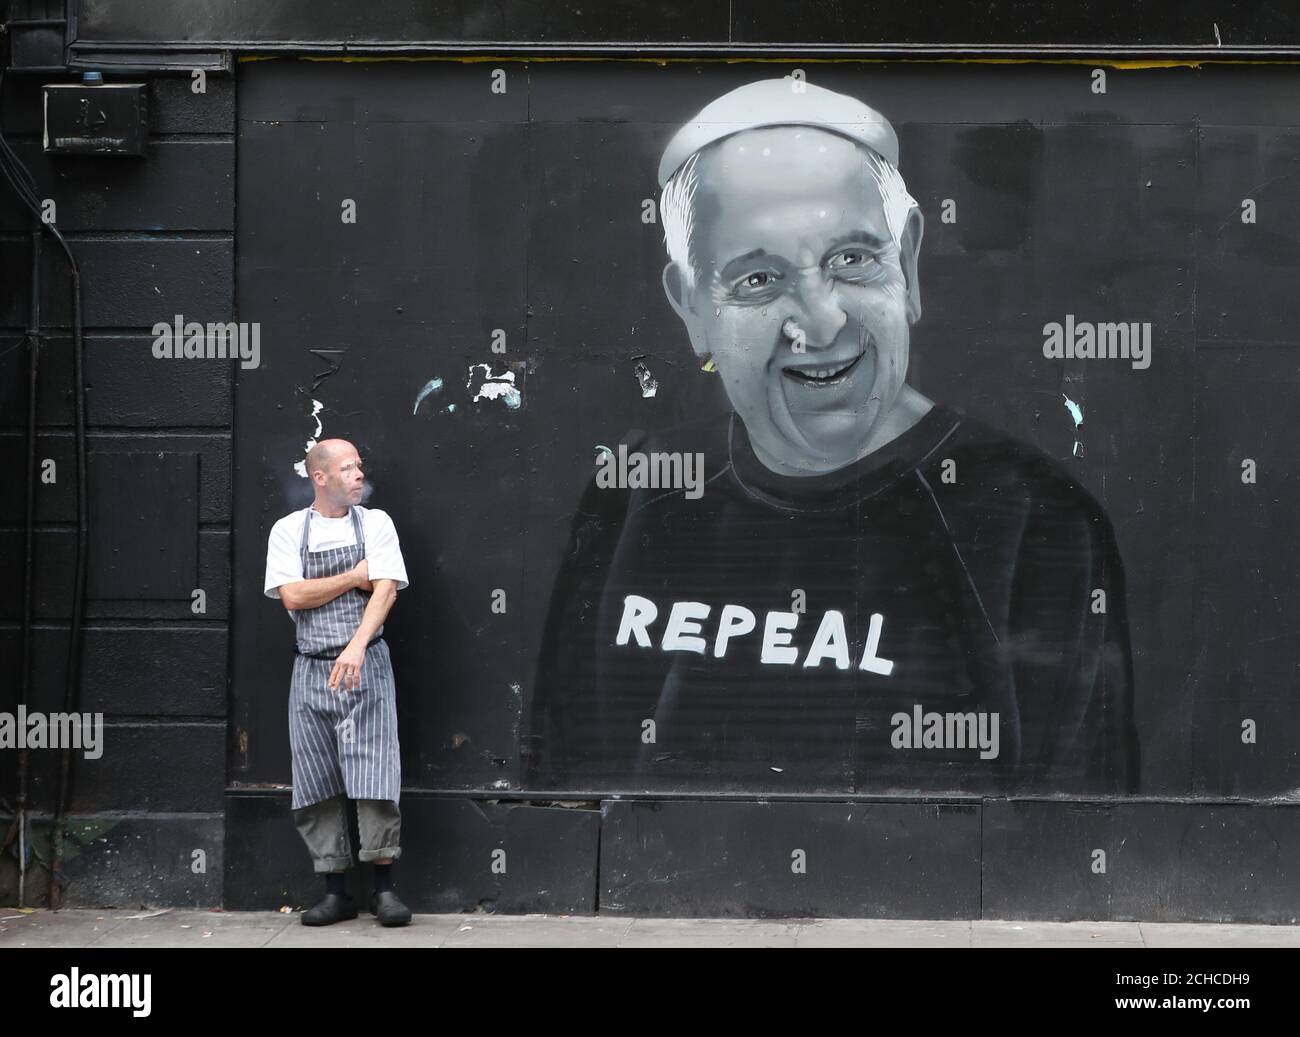 Ein Wandgemälde, das Papst Franziskus zeigt, der die Aufhebung der 8. Änderung der Verfassung Irlands im Stadtzentrum von Dublin fordert. Stockfoto